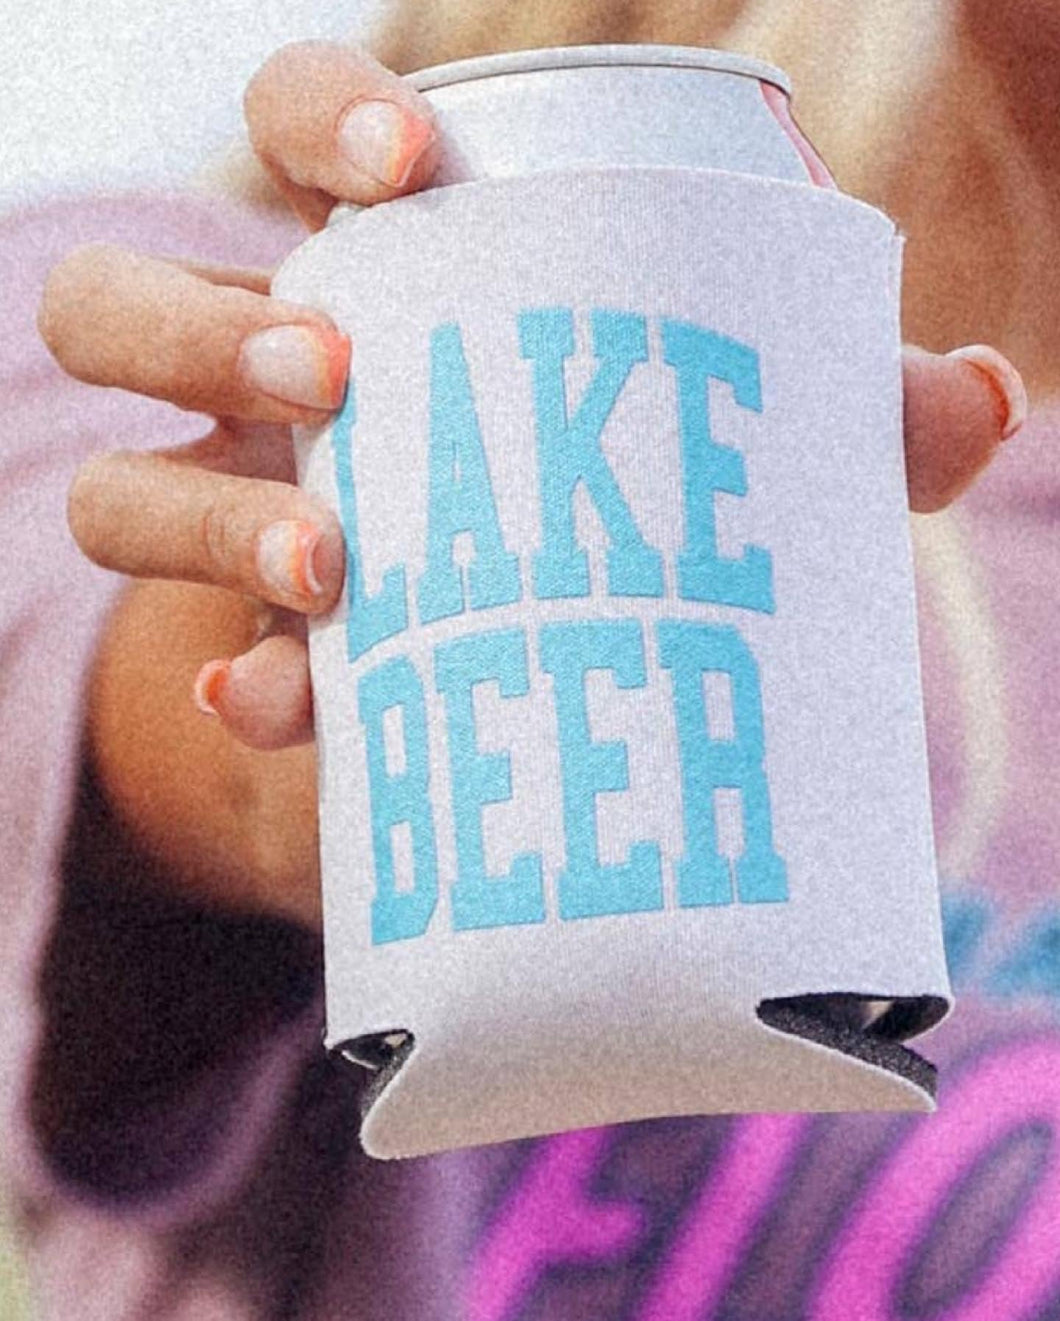 “Lake Beer